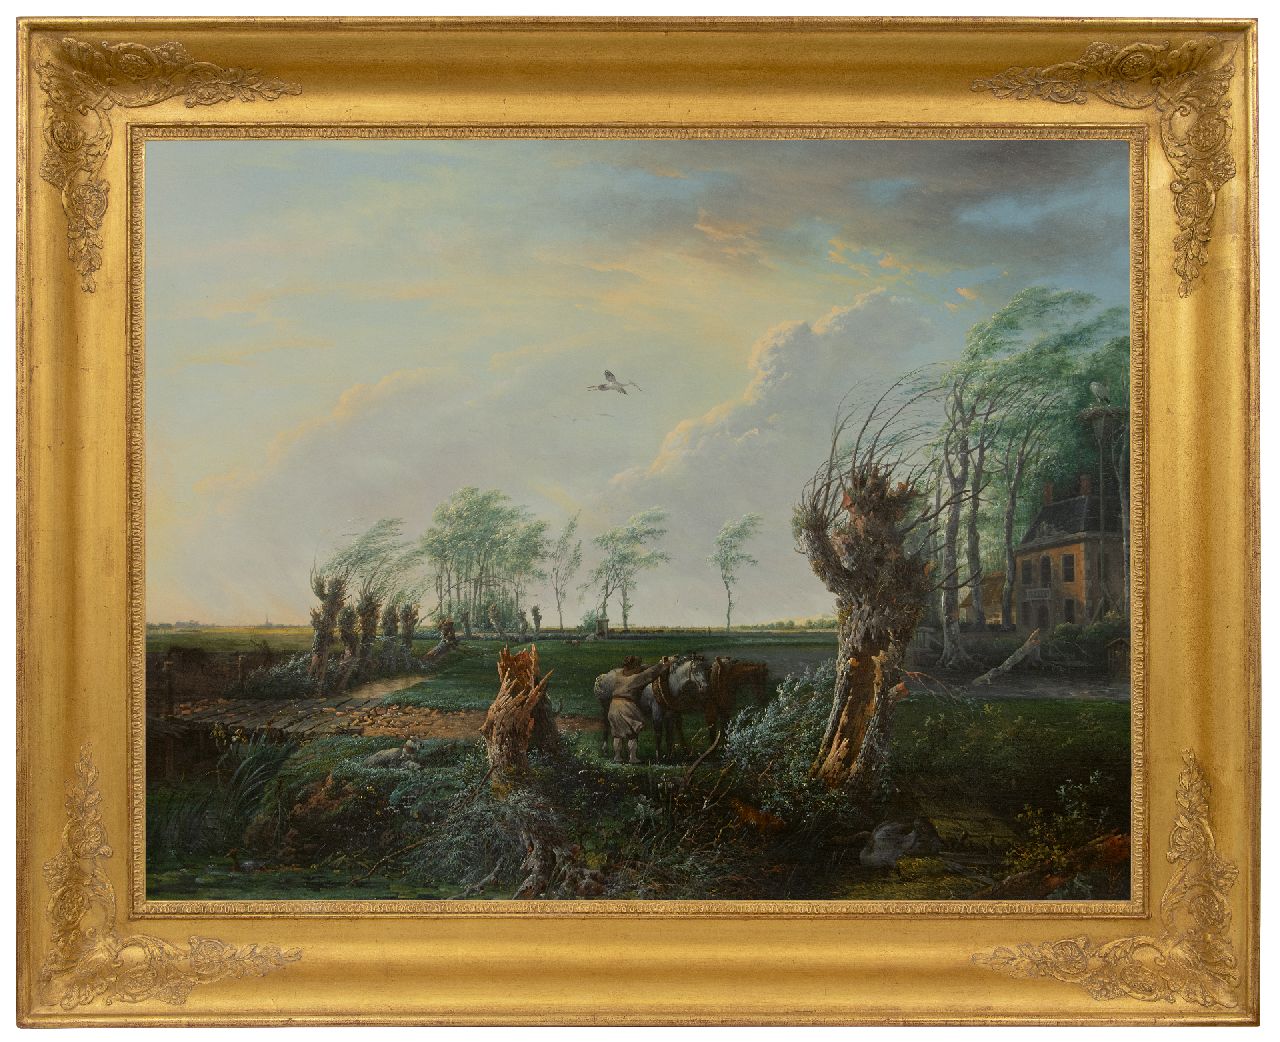 Nijmegen G. van | Gerard van Nijmegen | Schilderijen te koop aangeboden | Boer met werkpaarden op een landgoed bij storm, olieverf op paneel 68,8 x 89,7 cm, gesigneerd met initialen